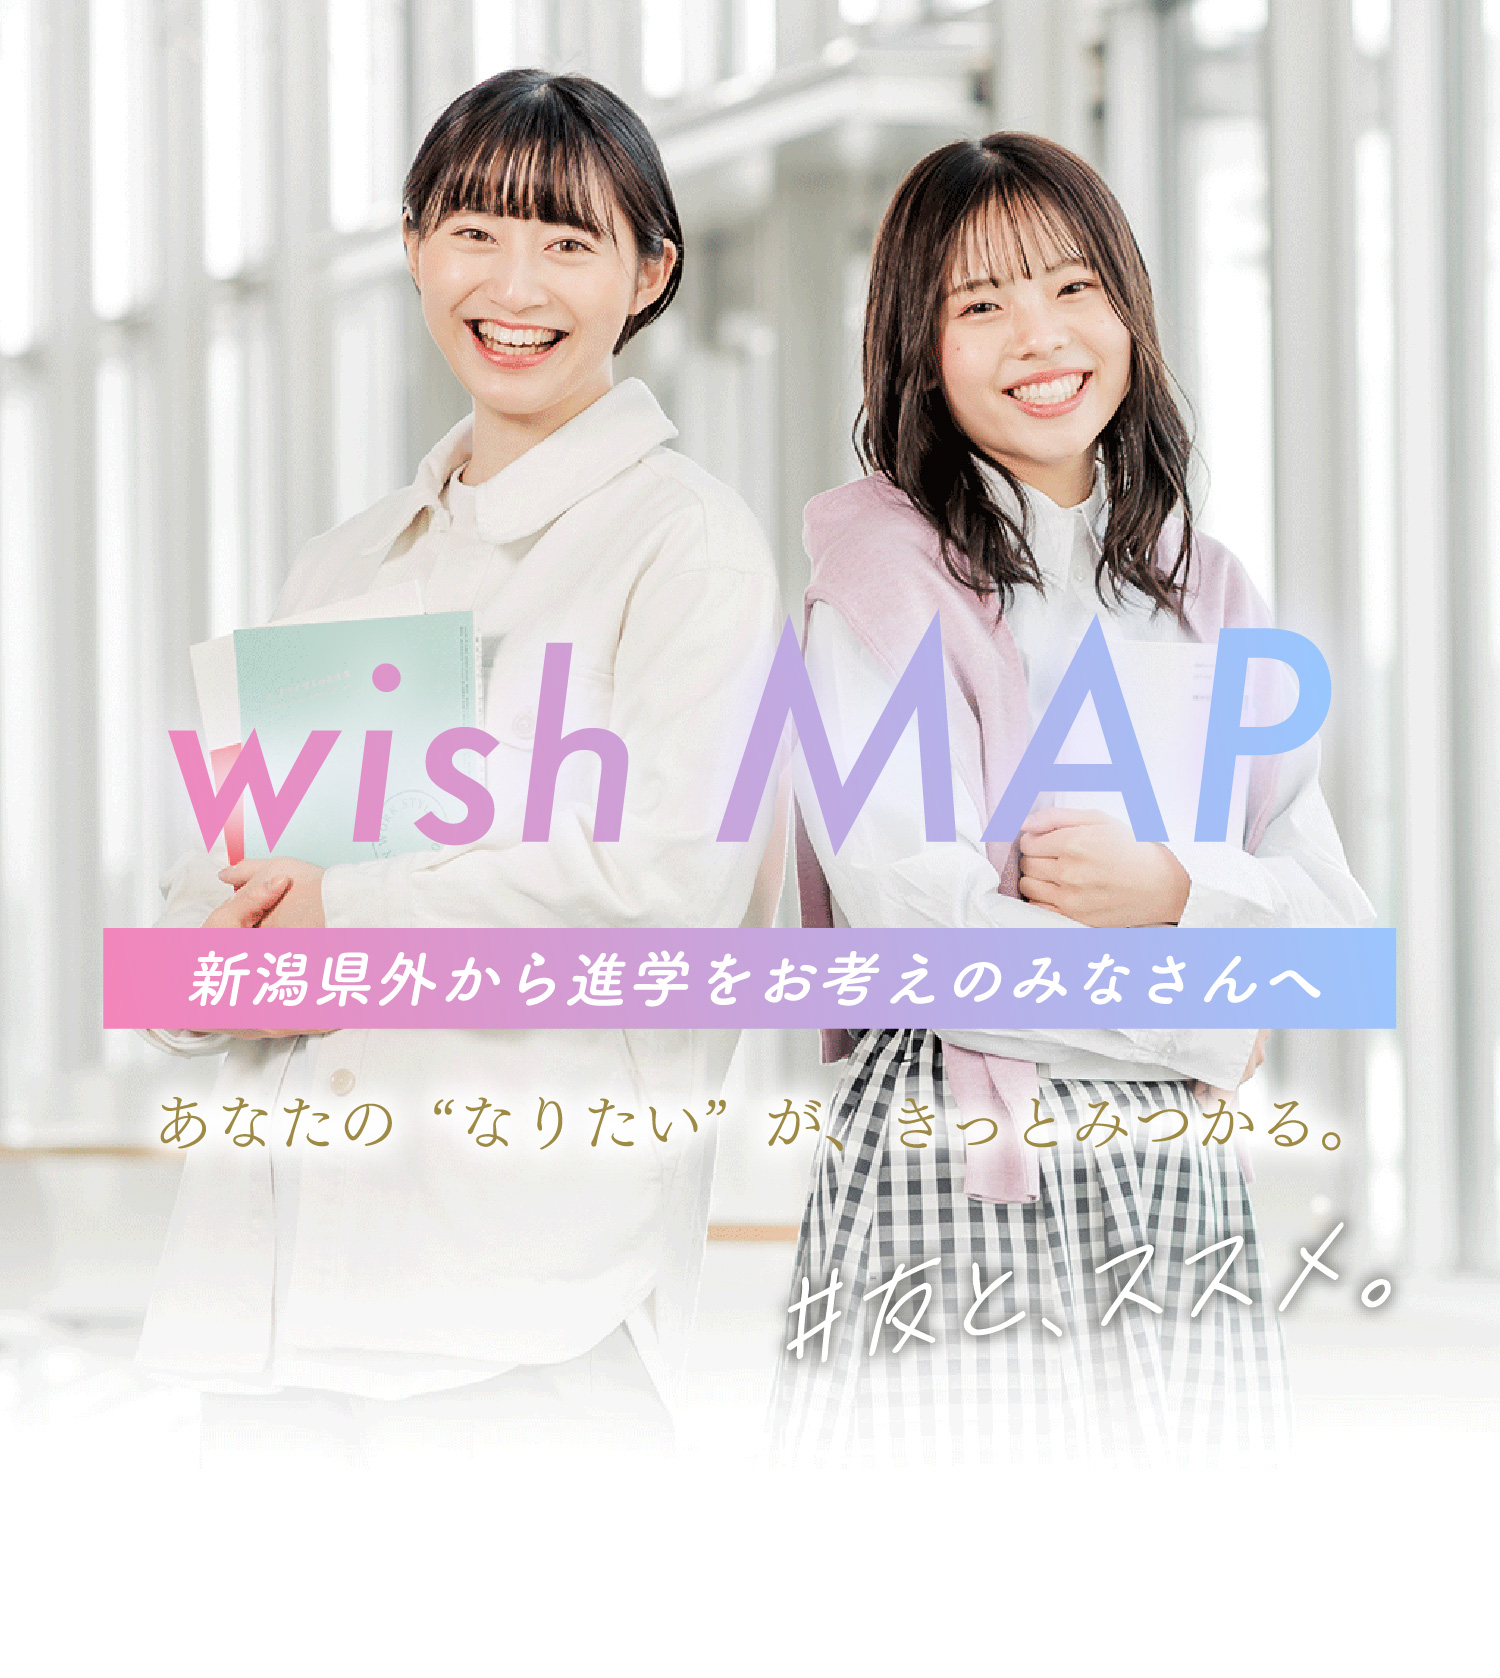 wish MAP - 新潟県外から進学をお考えのみなさんへ